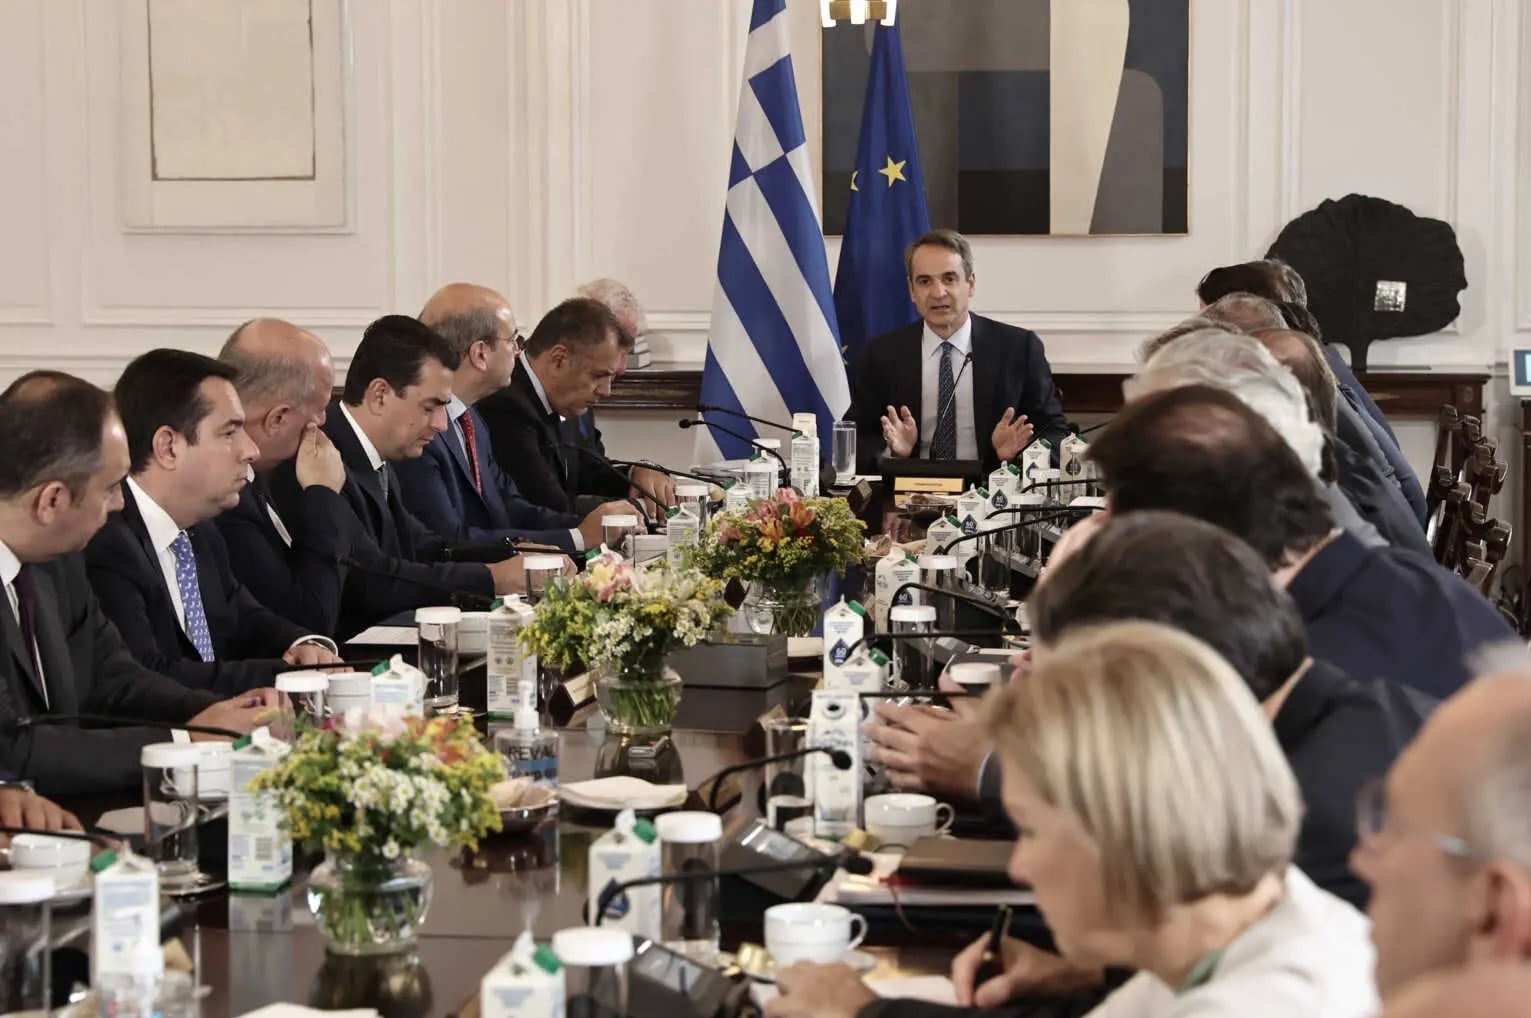 Μητσοτάκης στο Υπουργικό Συμβούλιο για Τουρκία: Ότι έχει να πει η Ελλάδα, το είπε στον ΟΗΕ